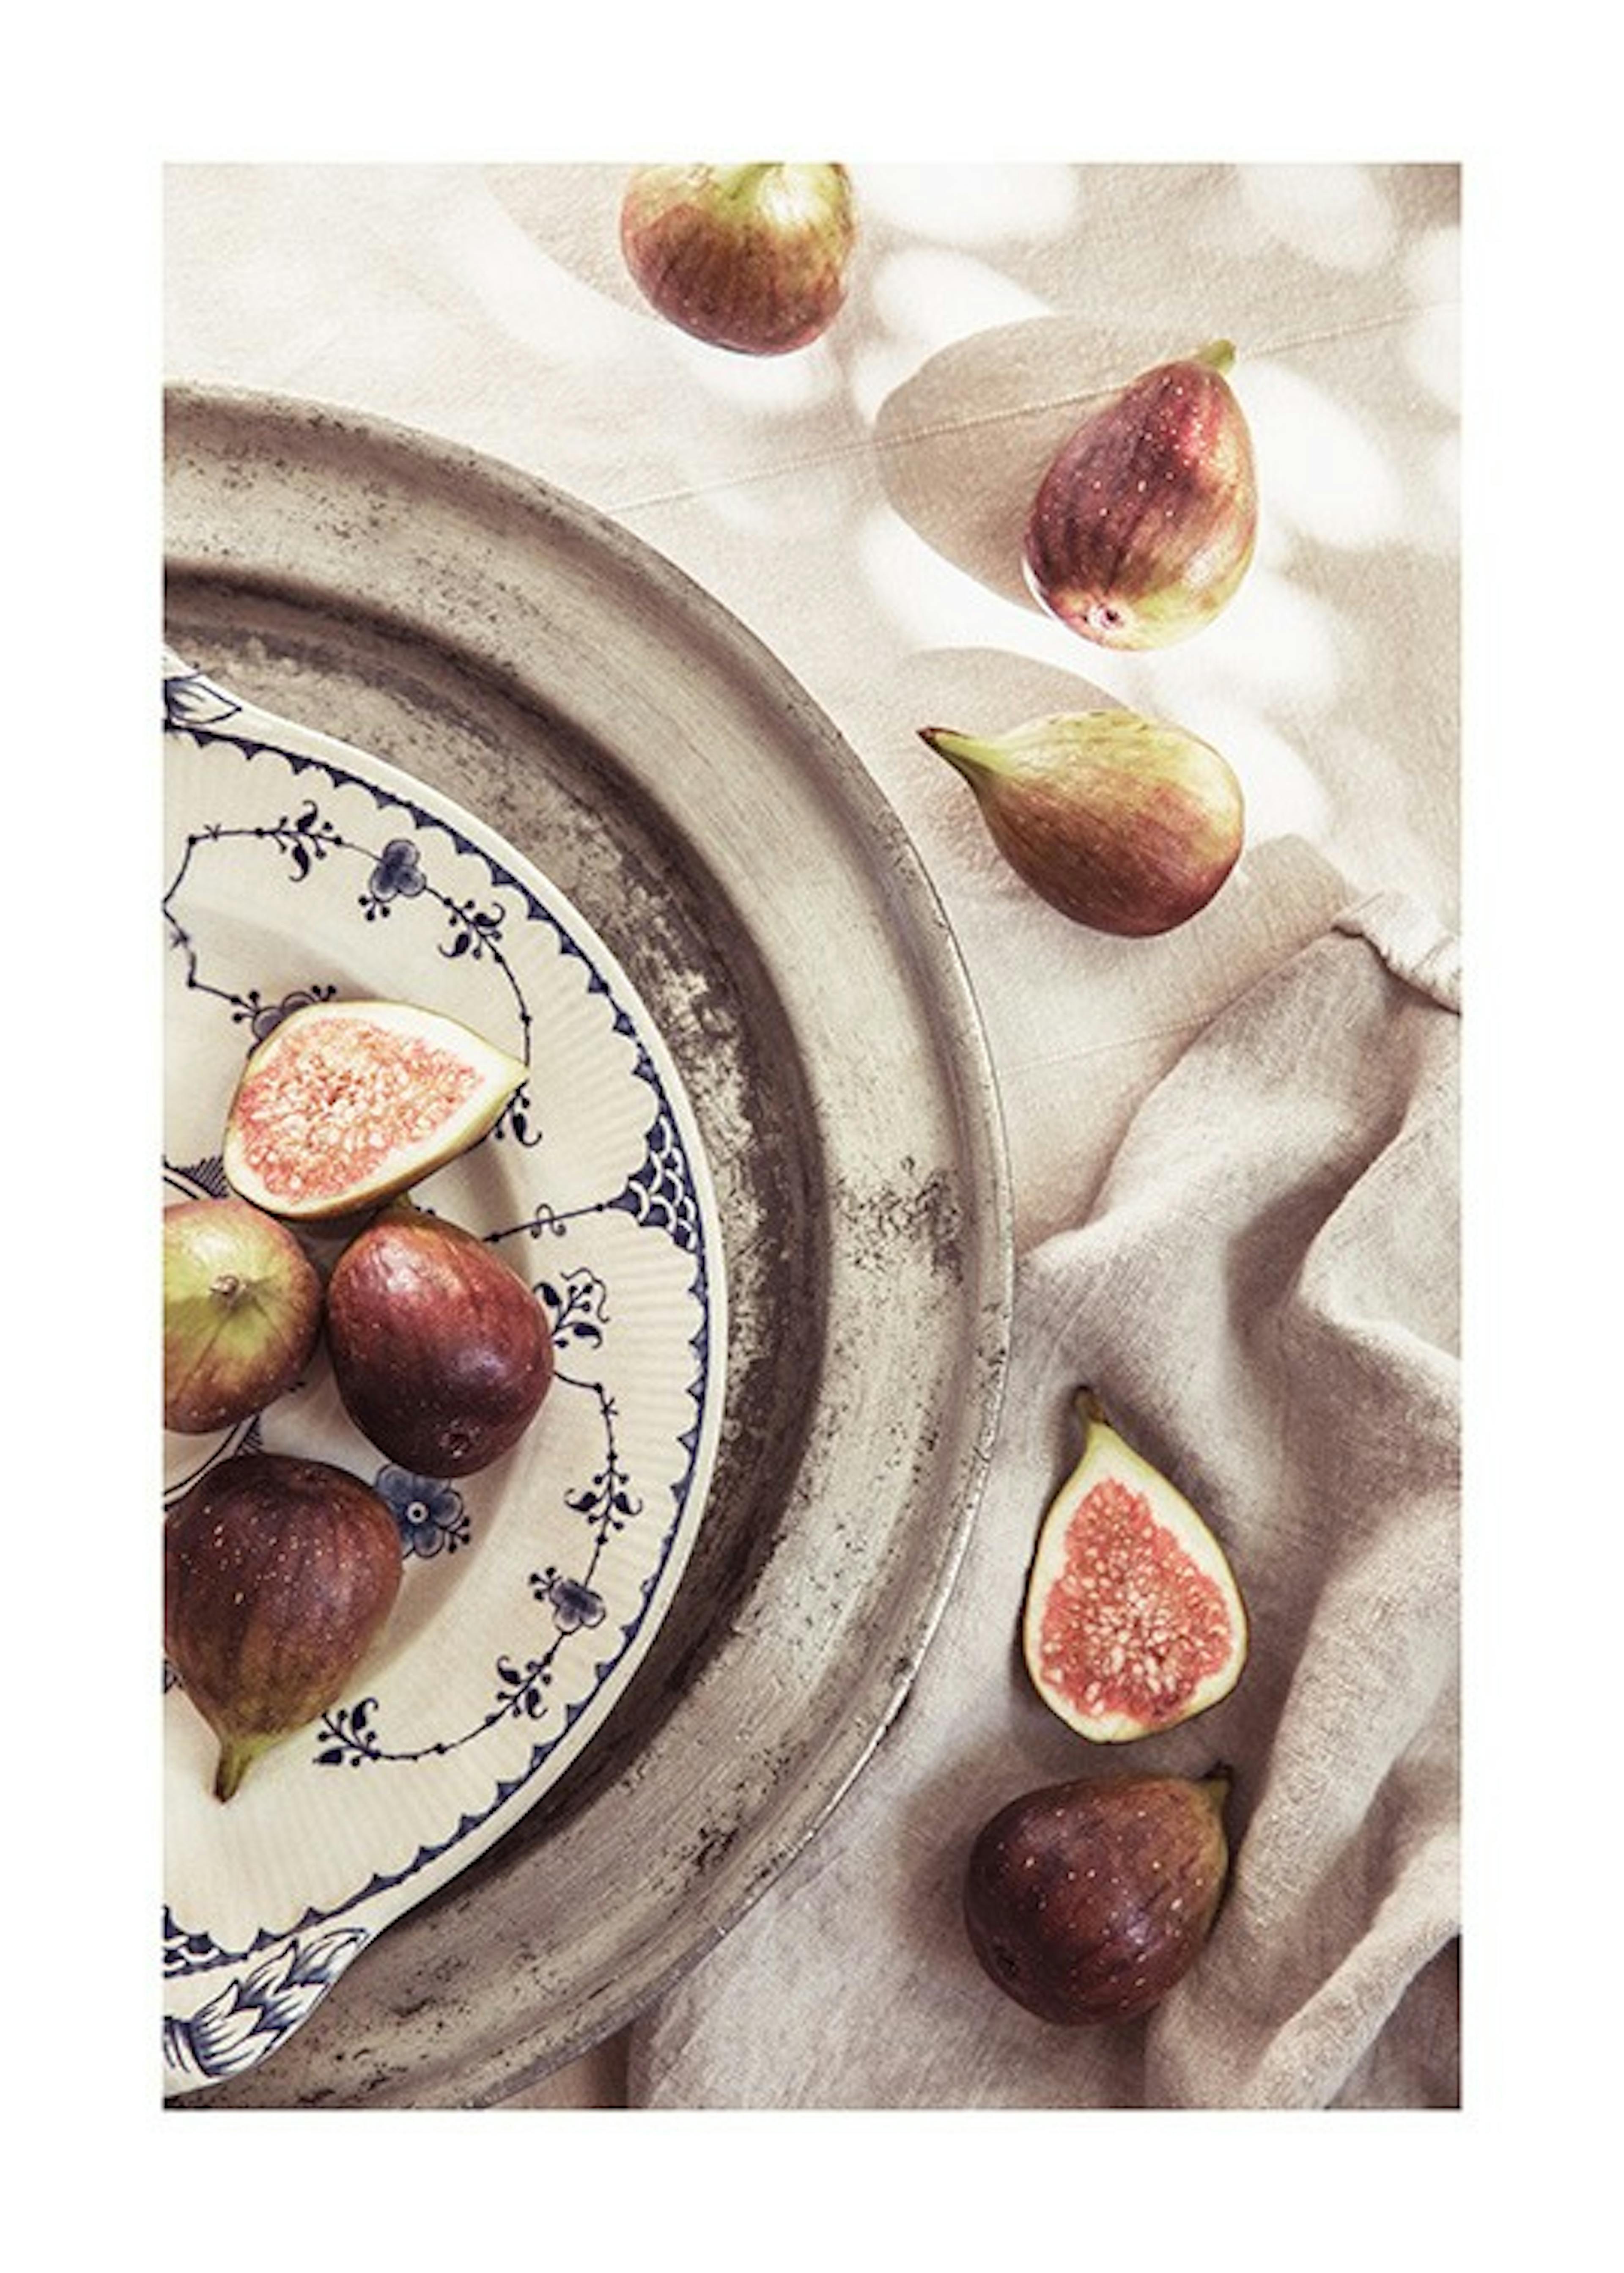 Figs on a Plate Juliste 0